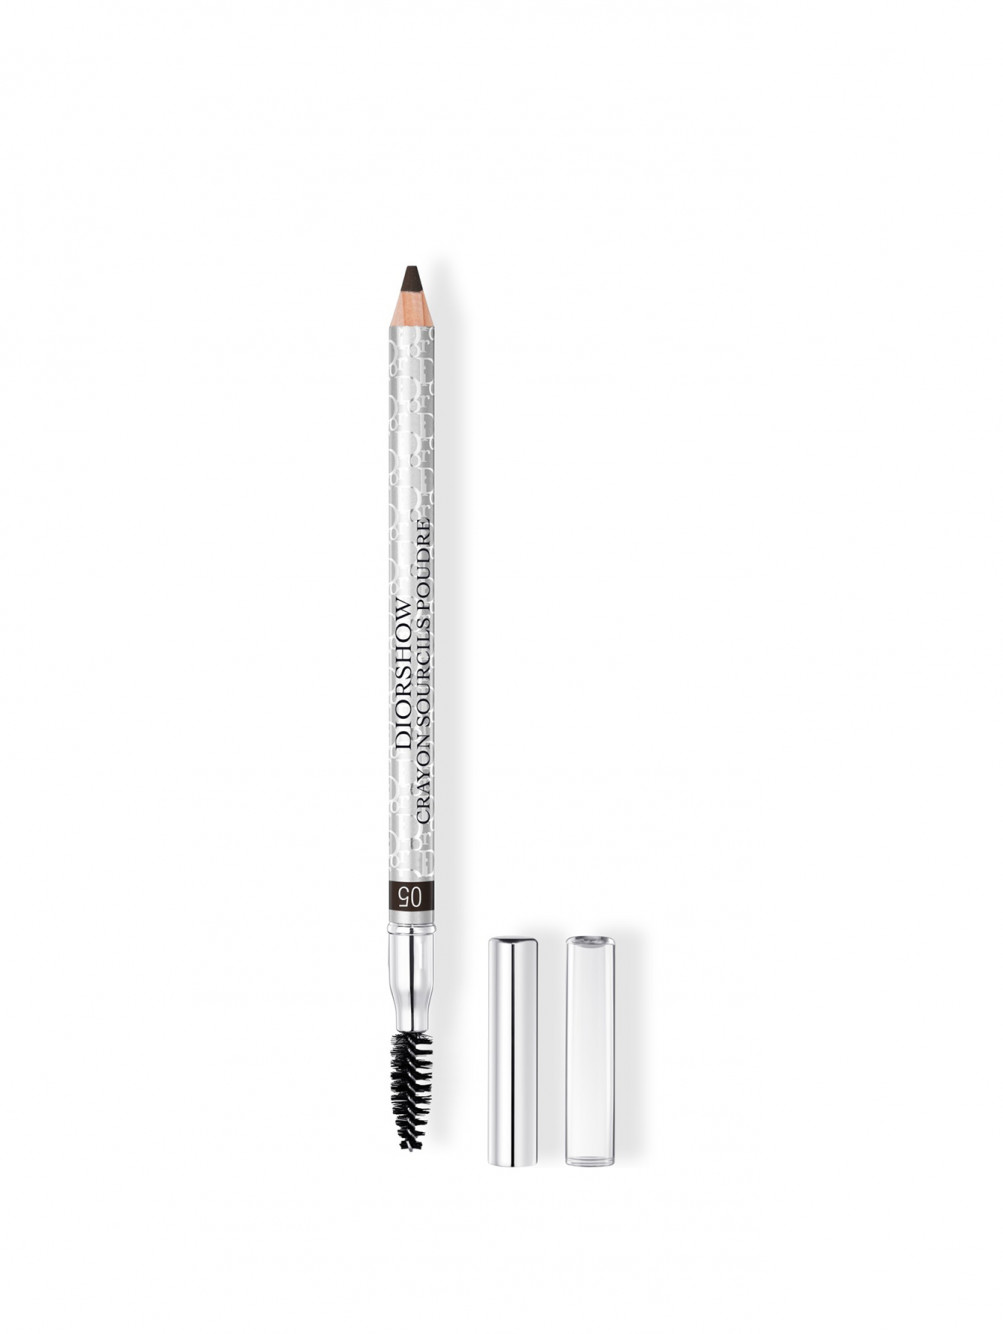 Diorshow Crayon Sourcils Poudre Водостойкий карандаш для бровей с точилкой 05 Черный - Общий вид